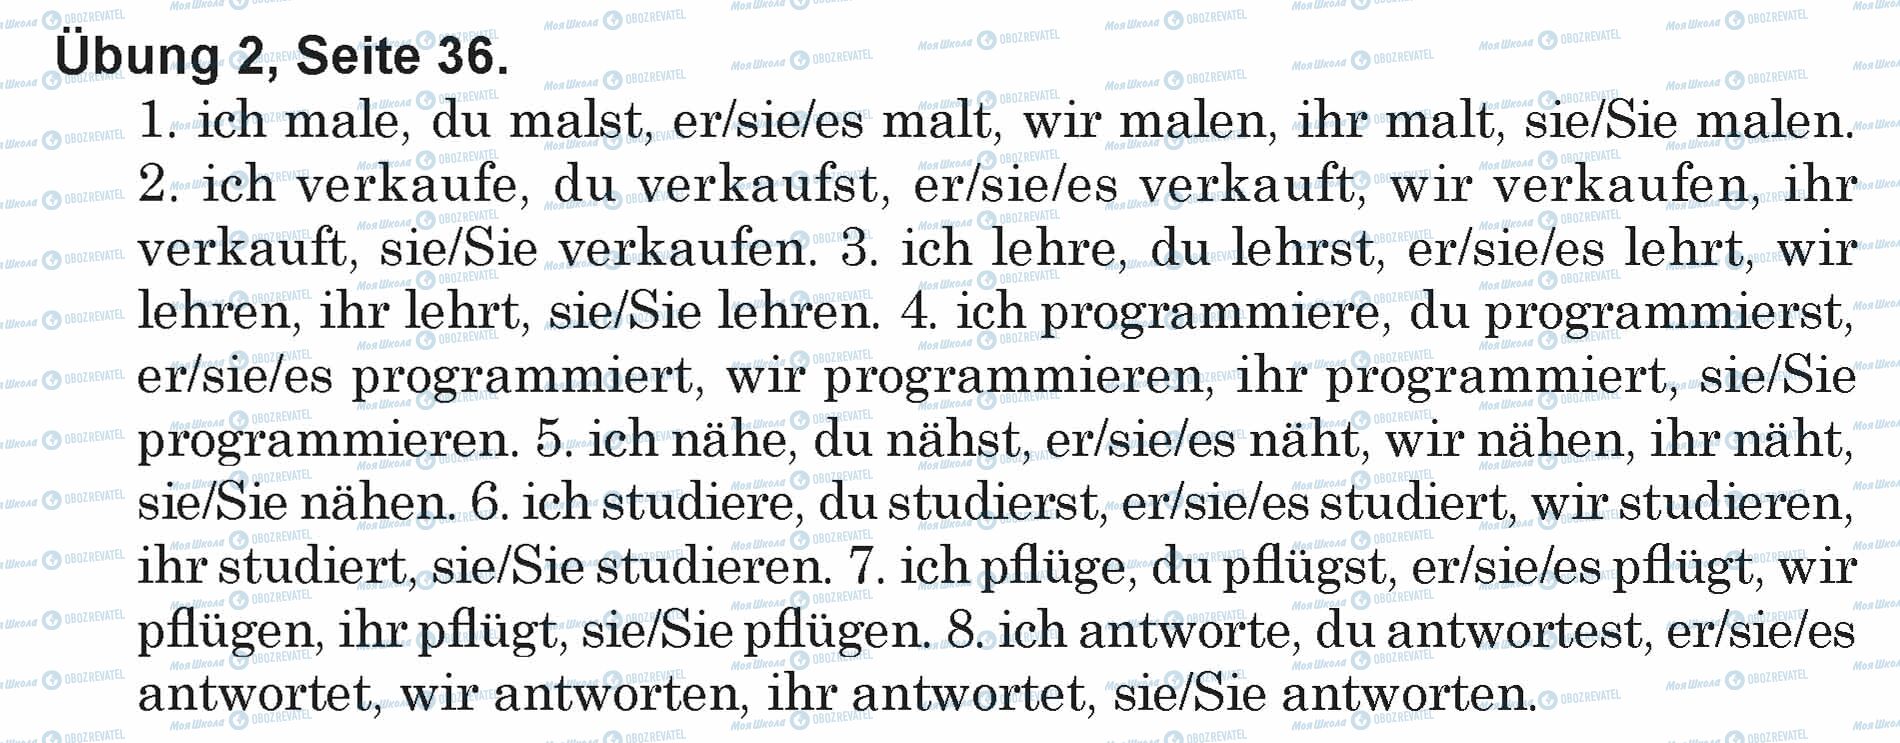 ГДЗ Німецька мова 5 клас сторінка Ubung 2, Seite 36